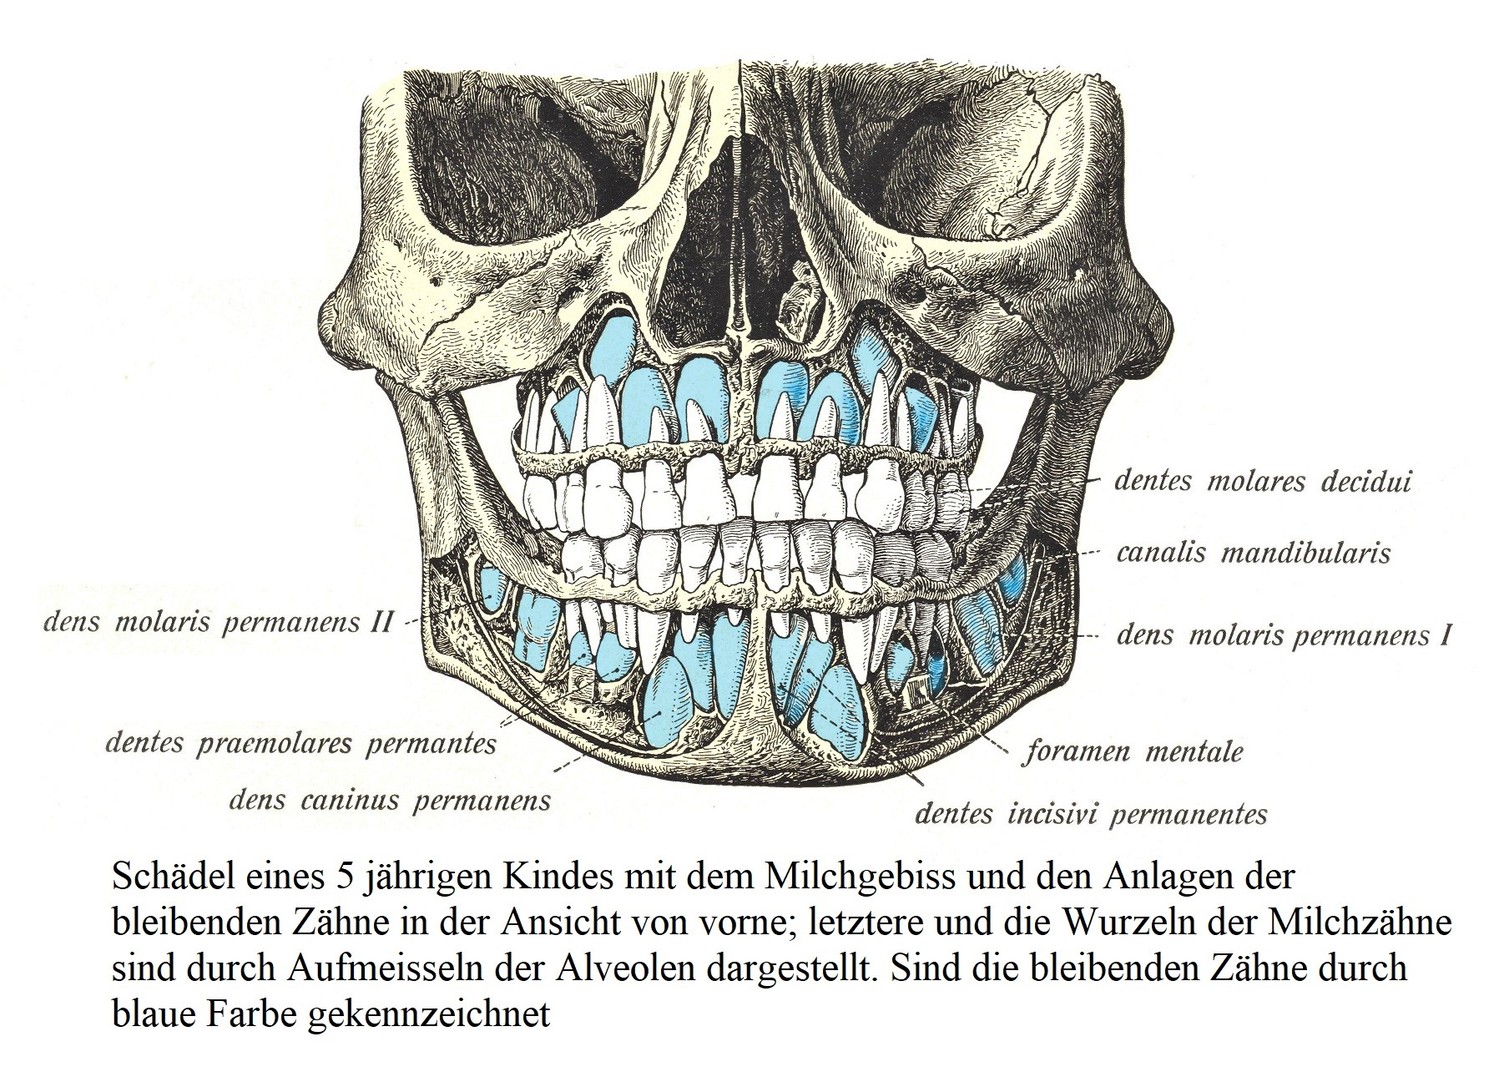 Череп ребенка 5 лет с молочными зубами и зачатками постоянных зубов, вид спереди; последние и корни молочных зубов представлены долблением альвеол. Синим цветом отмечены постоянные зубы